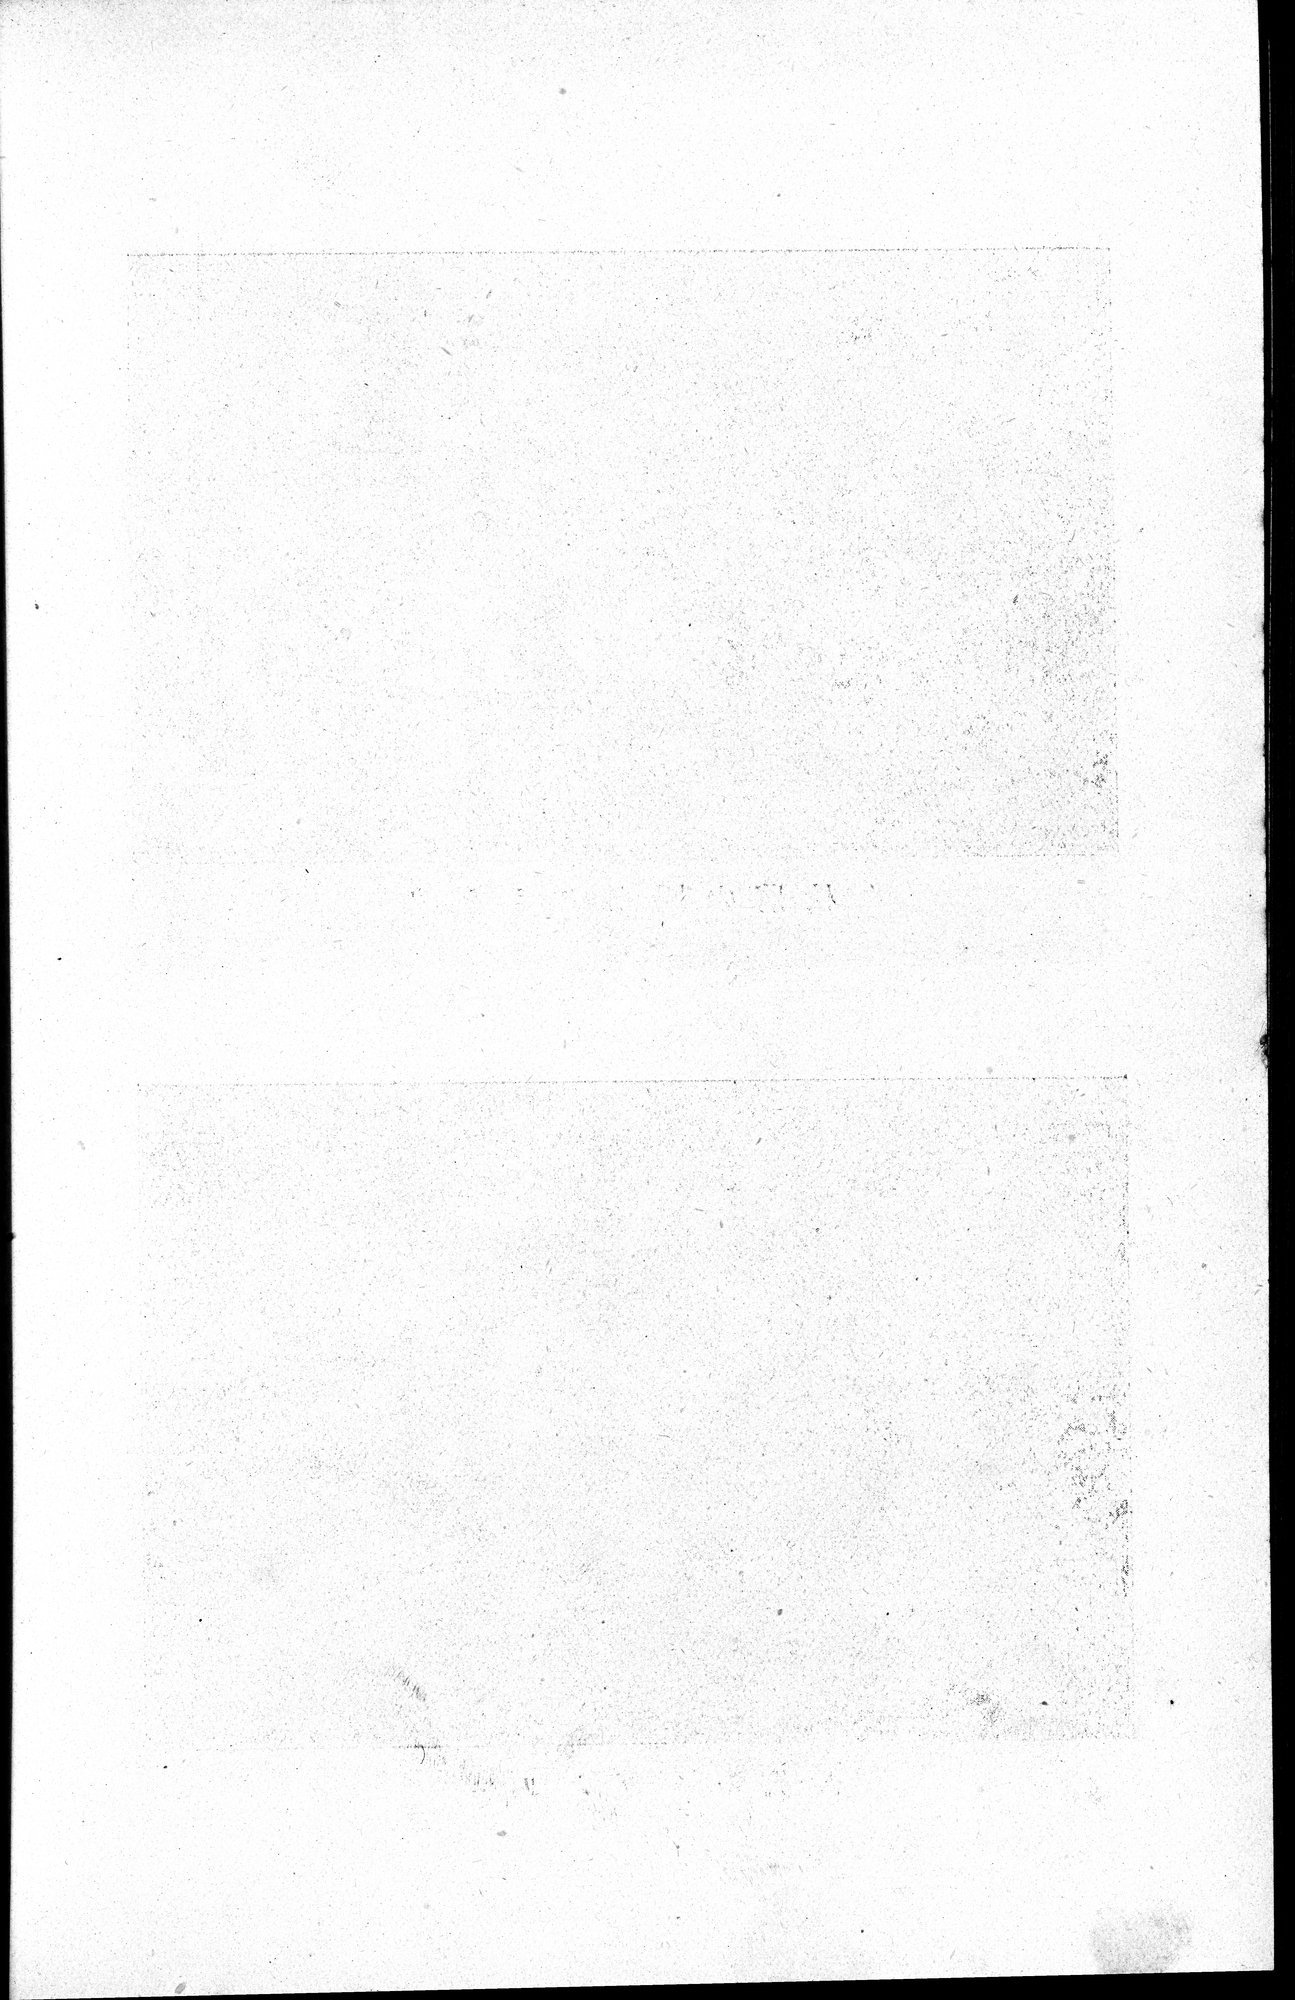 伊犂紀行 : vol.1 / Page 412 (Grayscale High Resolution Image)